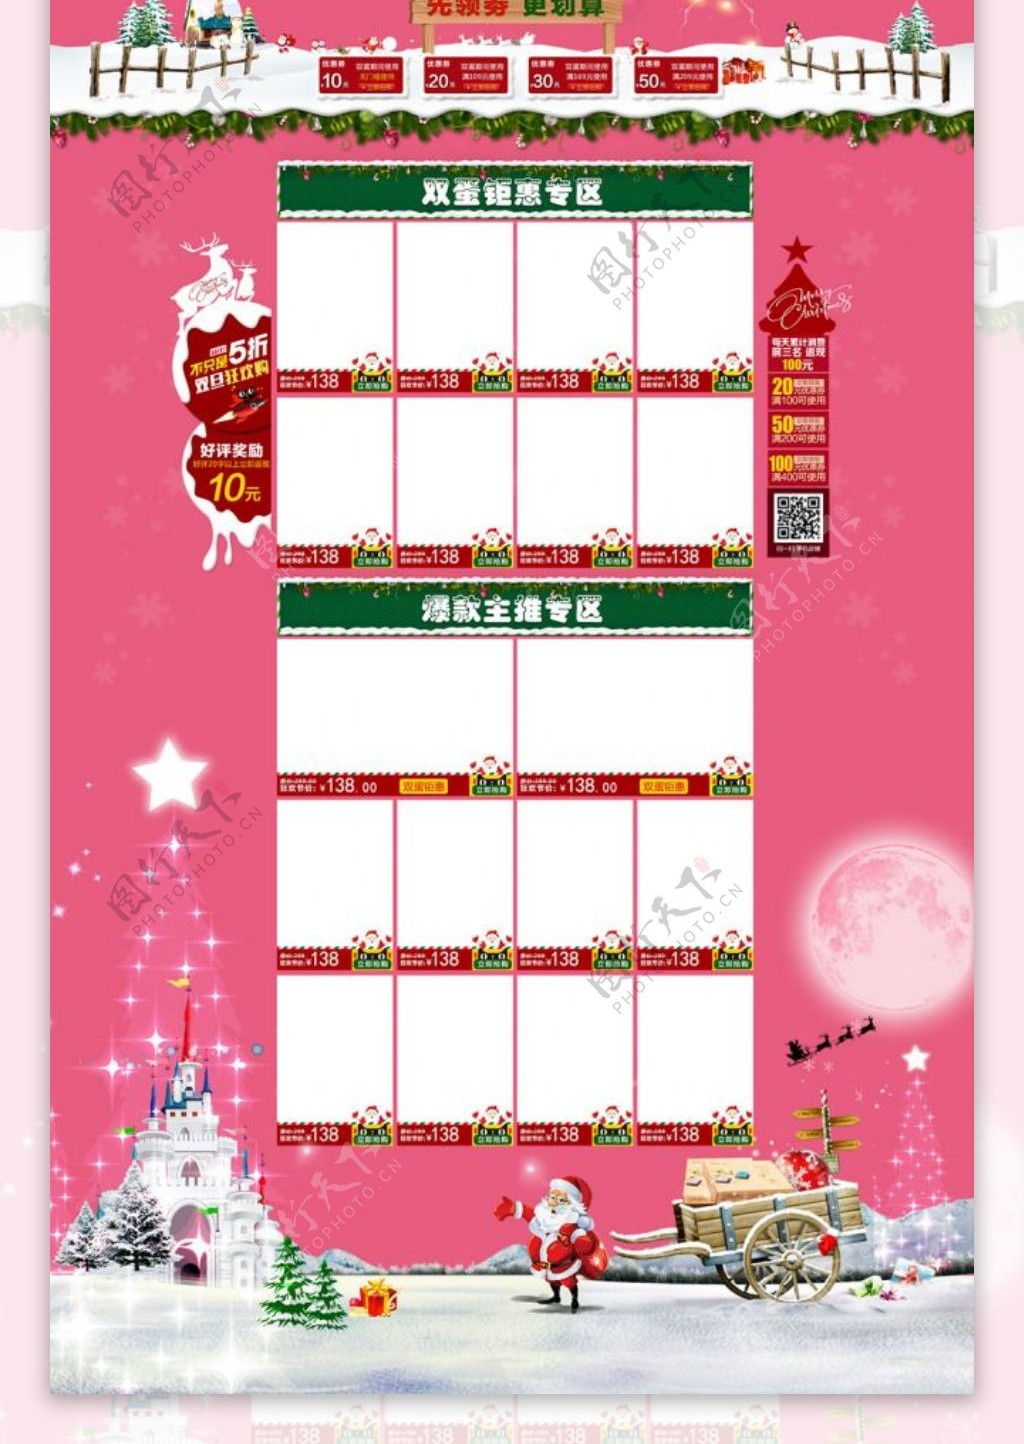 淘宝天猫圣诞节首页海报促销模板